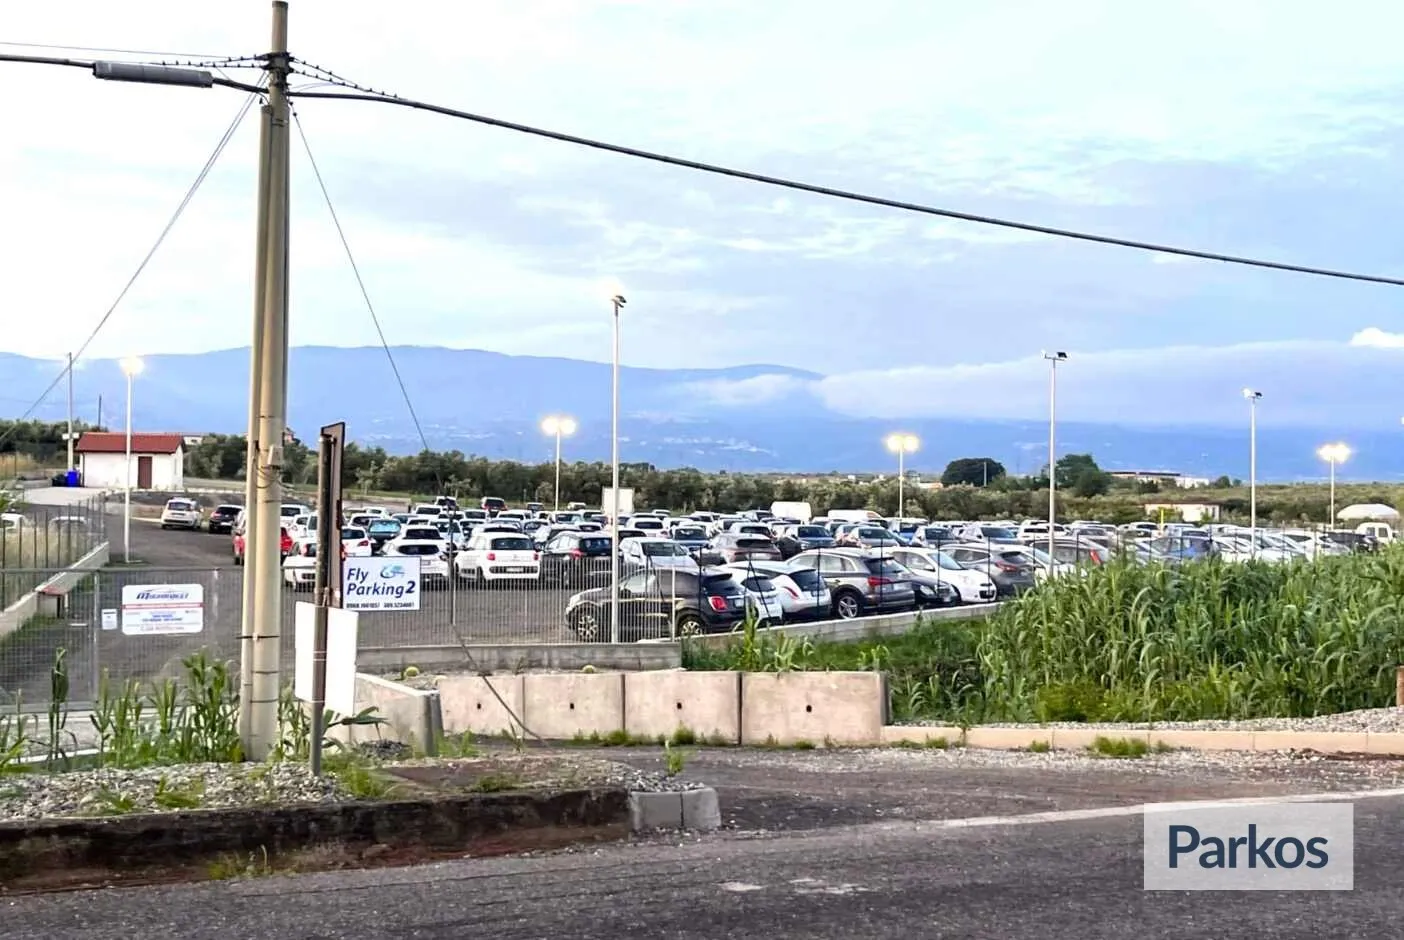 Fly Parking Lamezia 2 (Paga in parcheggio) - Parcheggio Aeroporto Lamezia Terme - picture 1